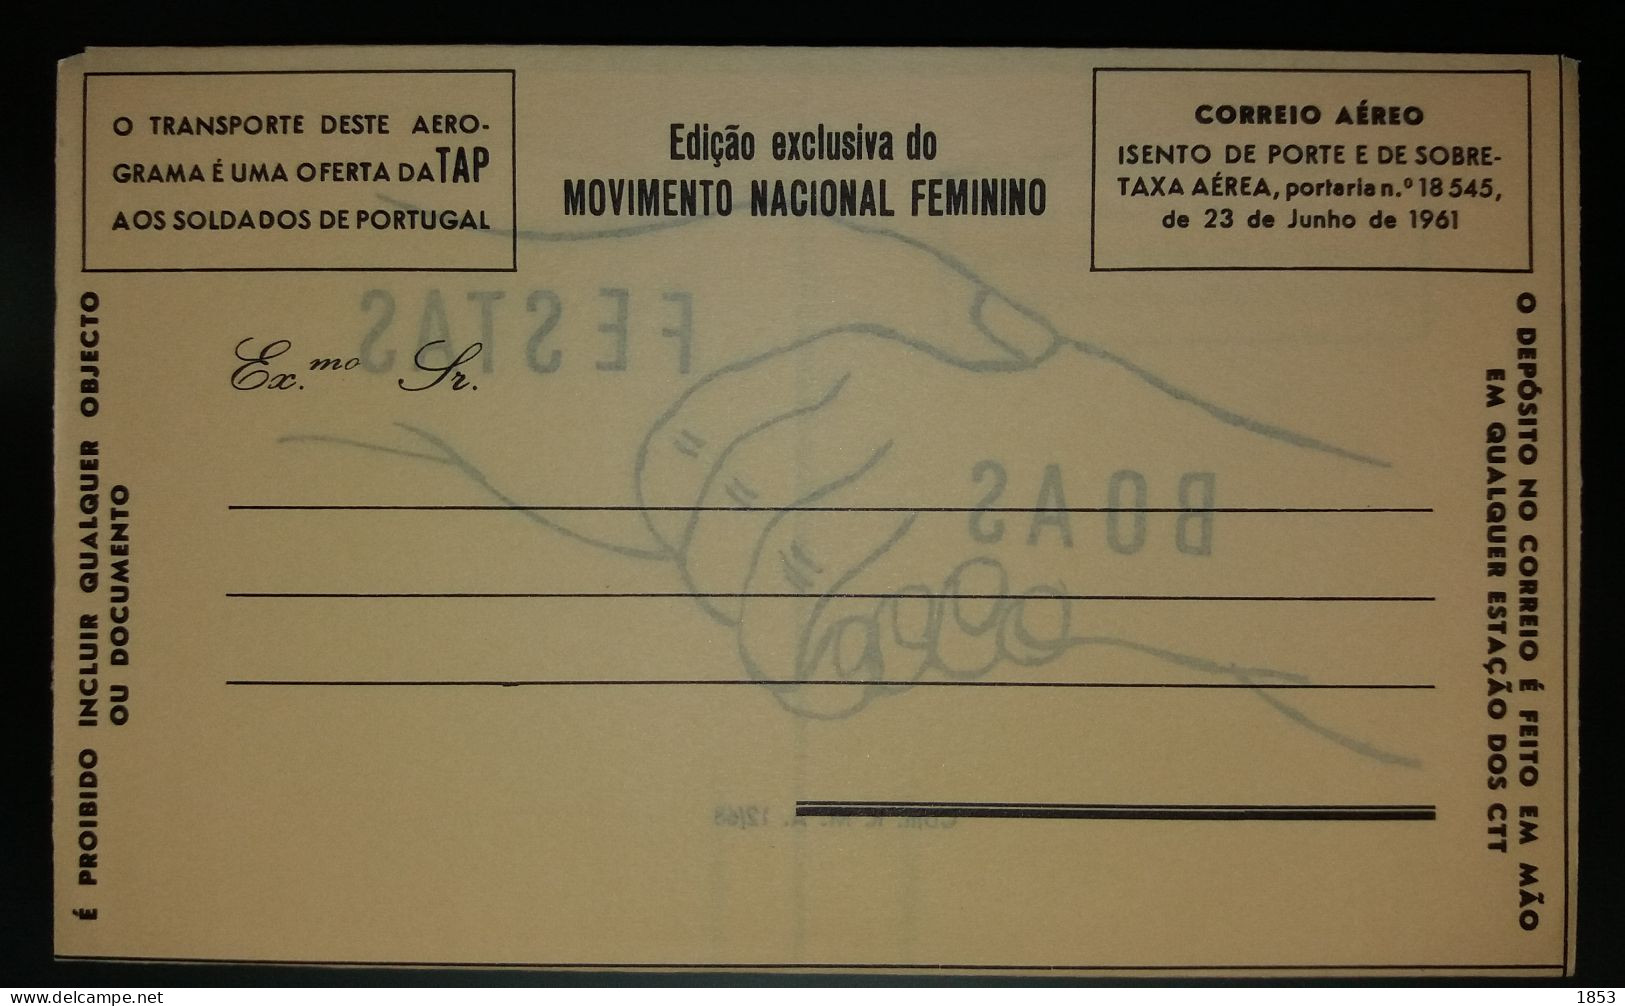 AÉROGRAMA - EDIÇÂO EXCLUSIVA DO MOVIMENTO NACIONAL FEMENINO - BOAS FESTAS - COM. R.M.A 12/68 - Angola